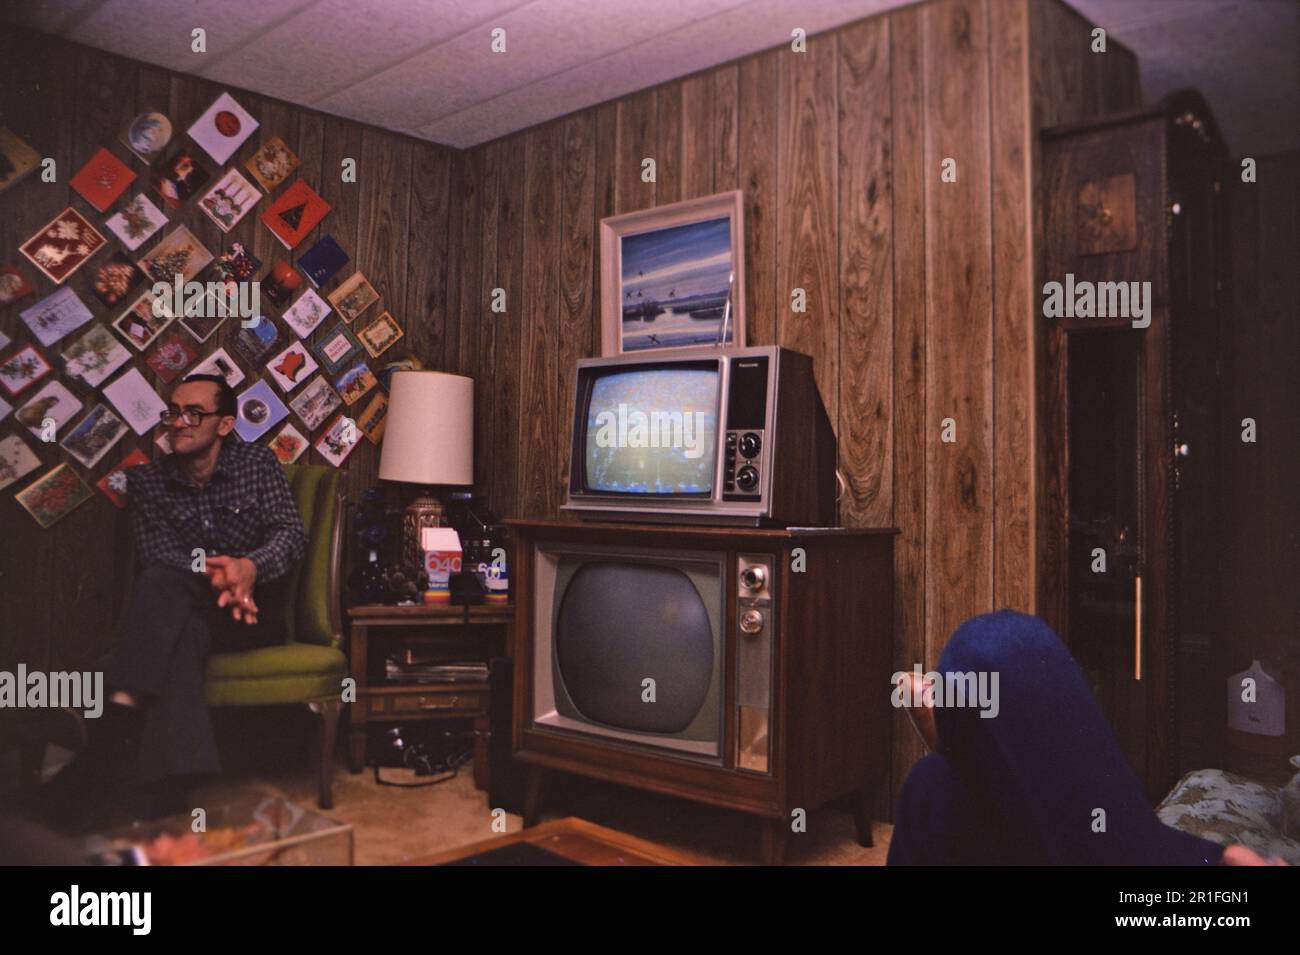 Typisches Wohnzimmer in einem amerikanischen Heim zu Weihnachten, Weihnachtskarten hängen an einer holzgetäfelten Wand und mit einem kaputten Konsolenfernseher und einem kleineren Fernseher darüber. 1982 Stockfoto